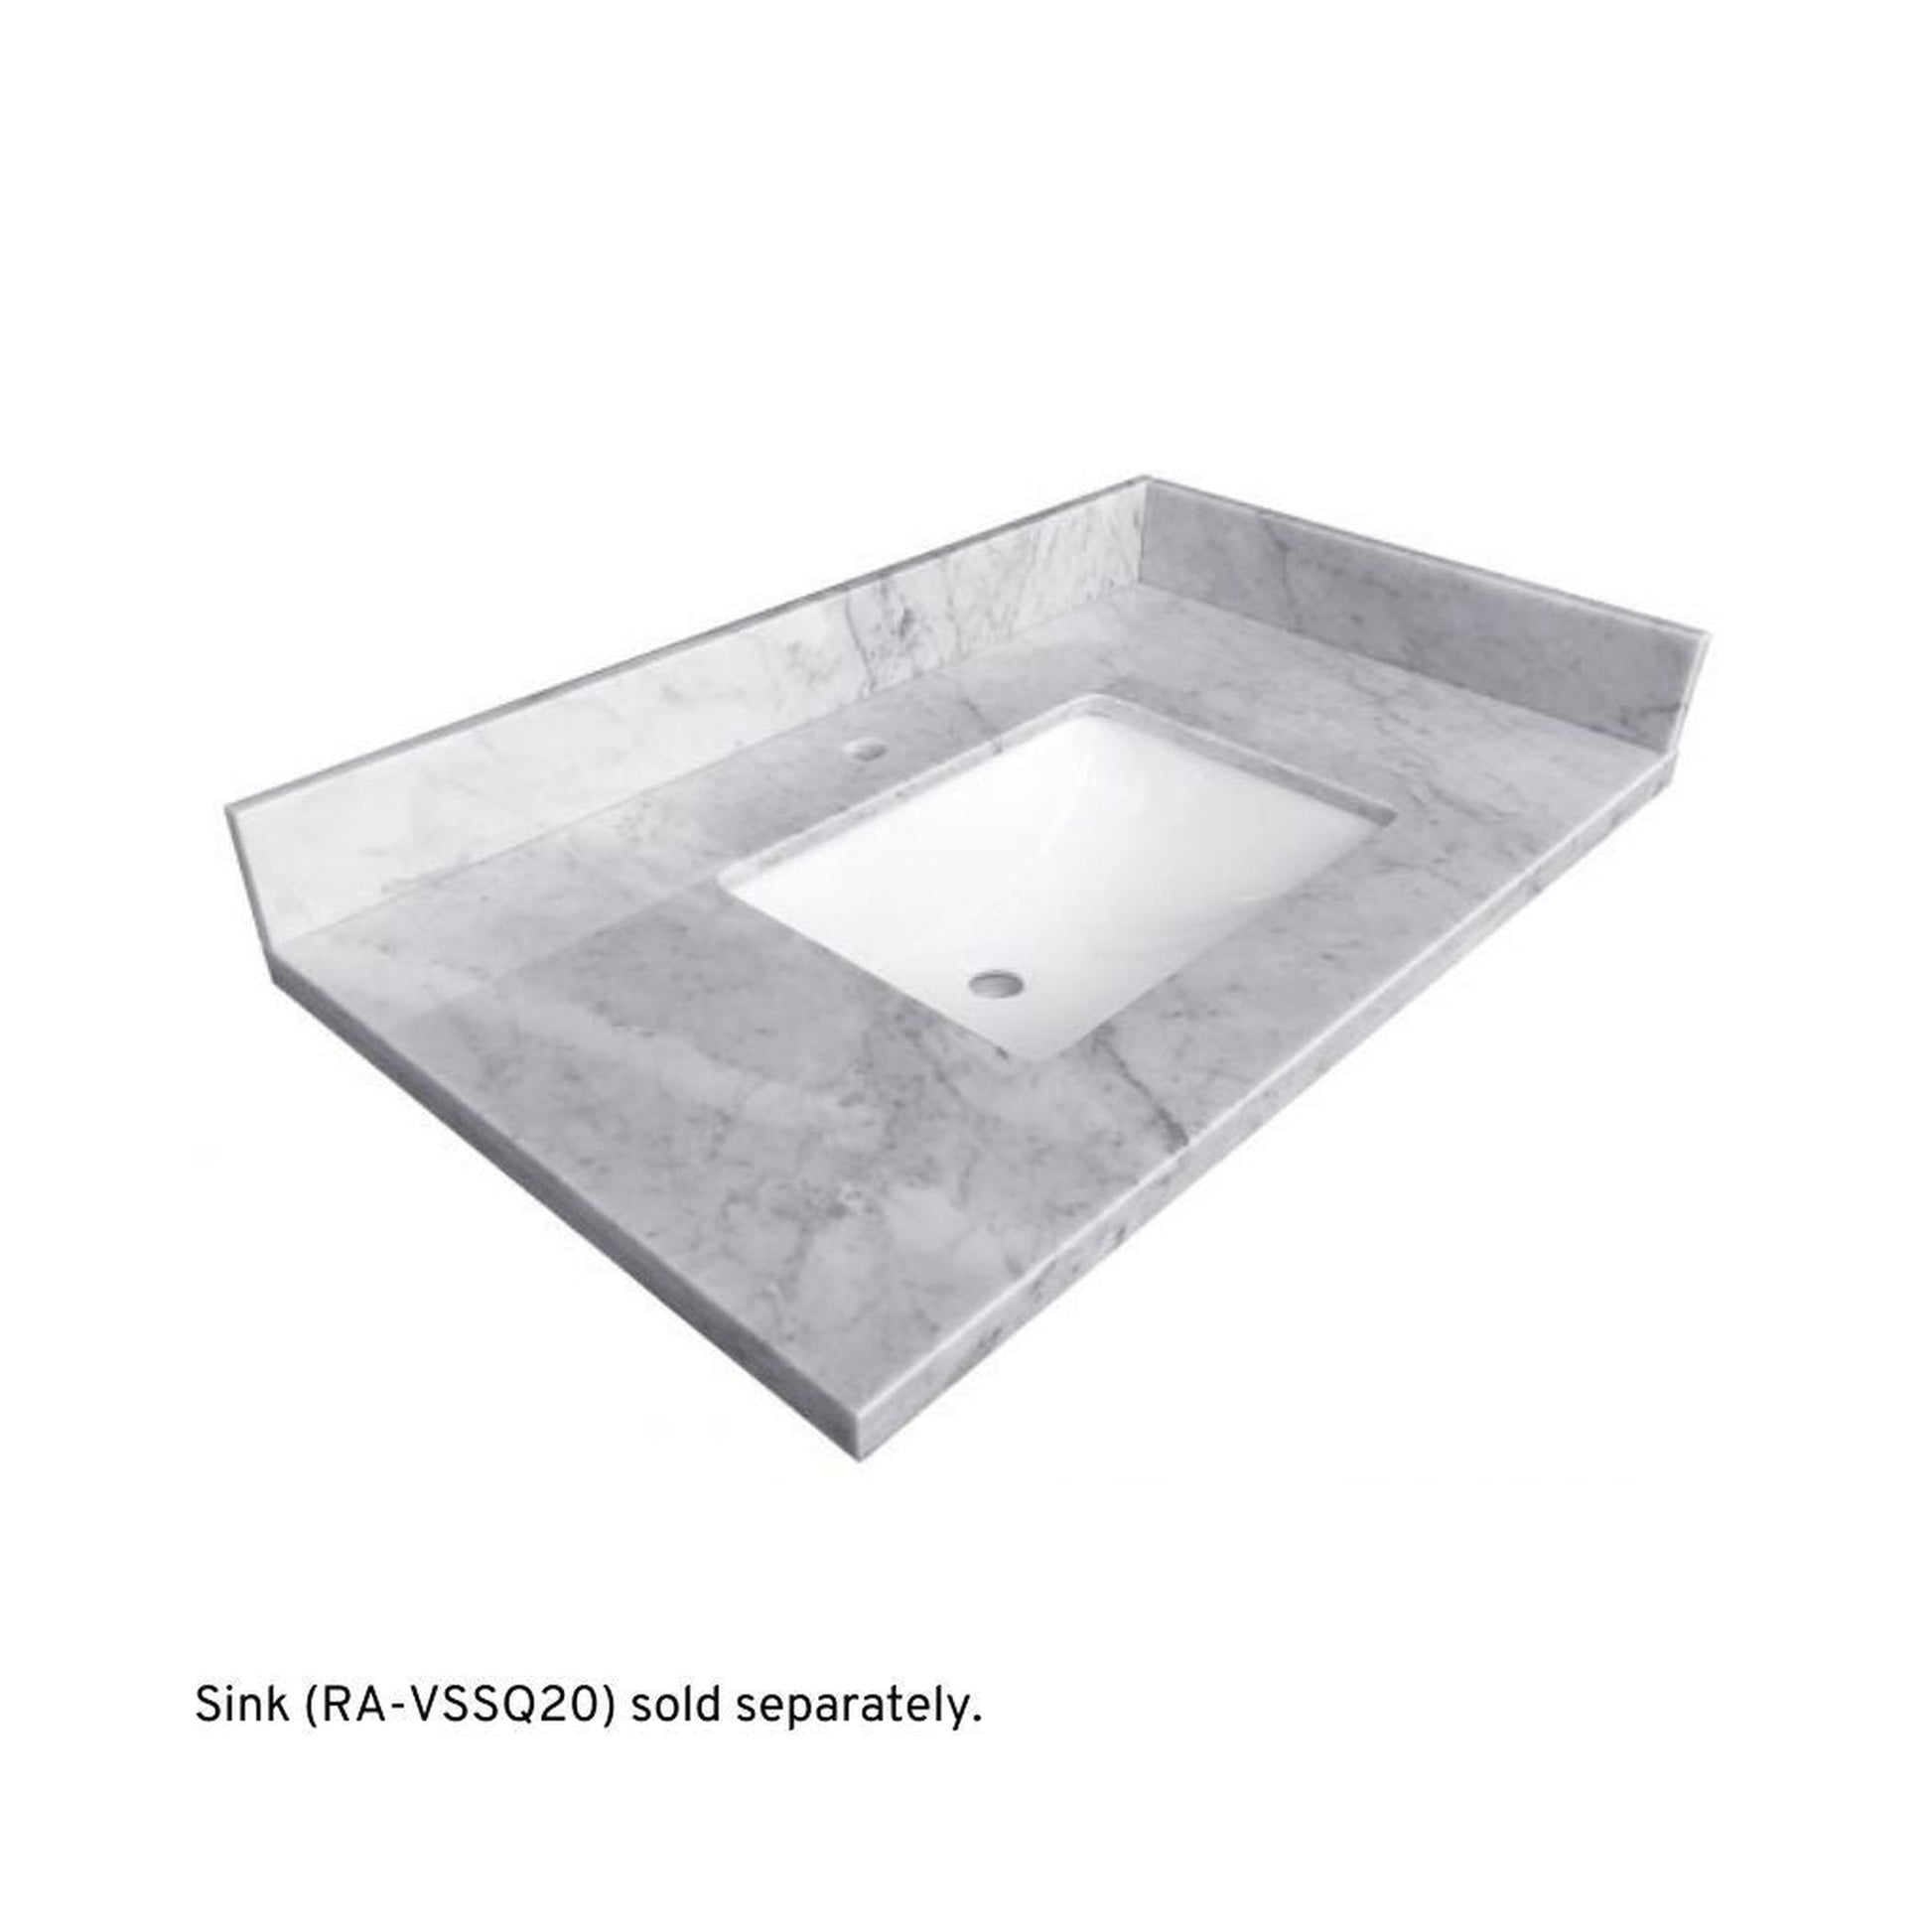 Ratel 26" x 23" Carrara Marble Single Sink Vanity Top